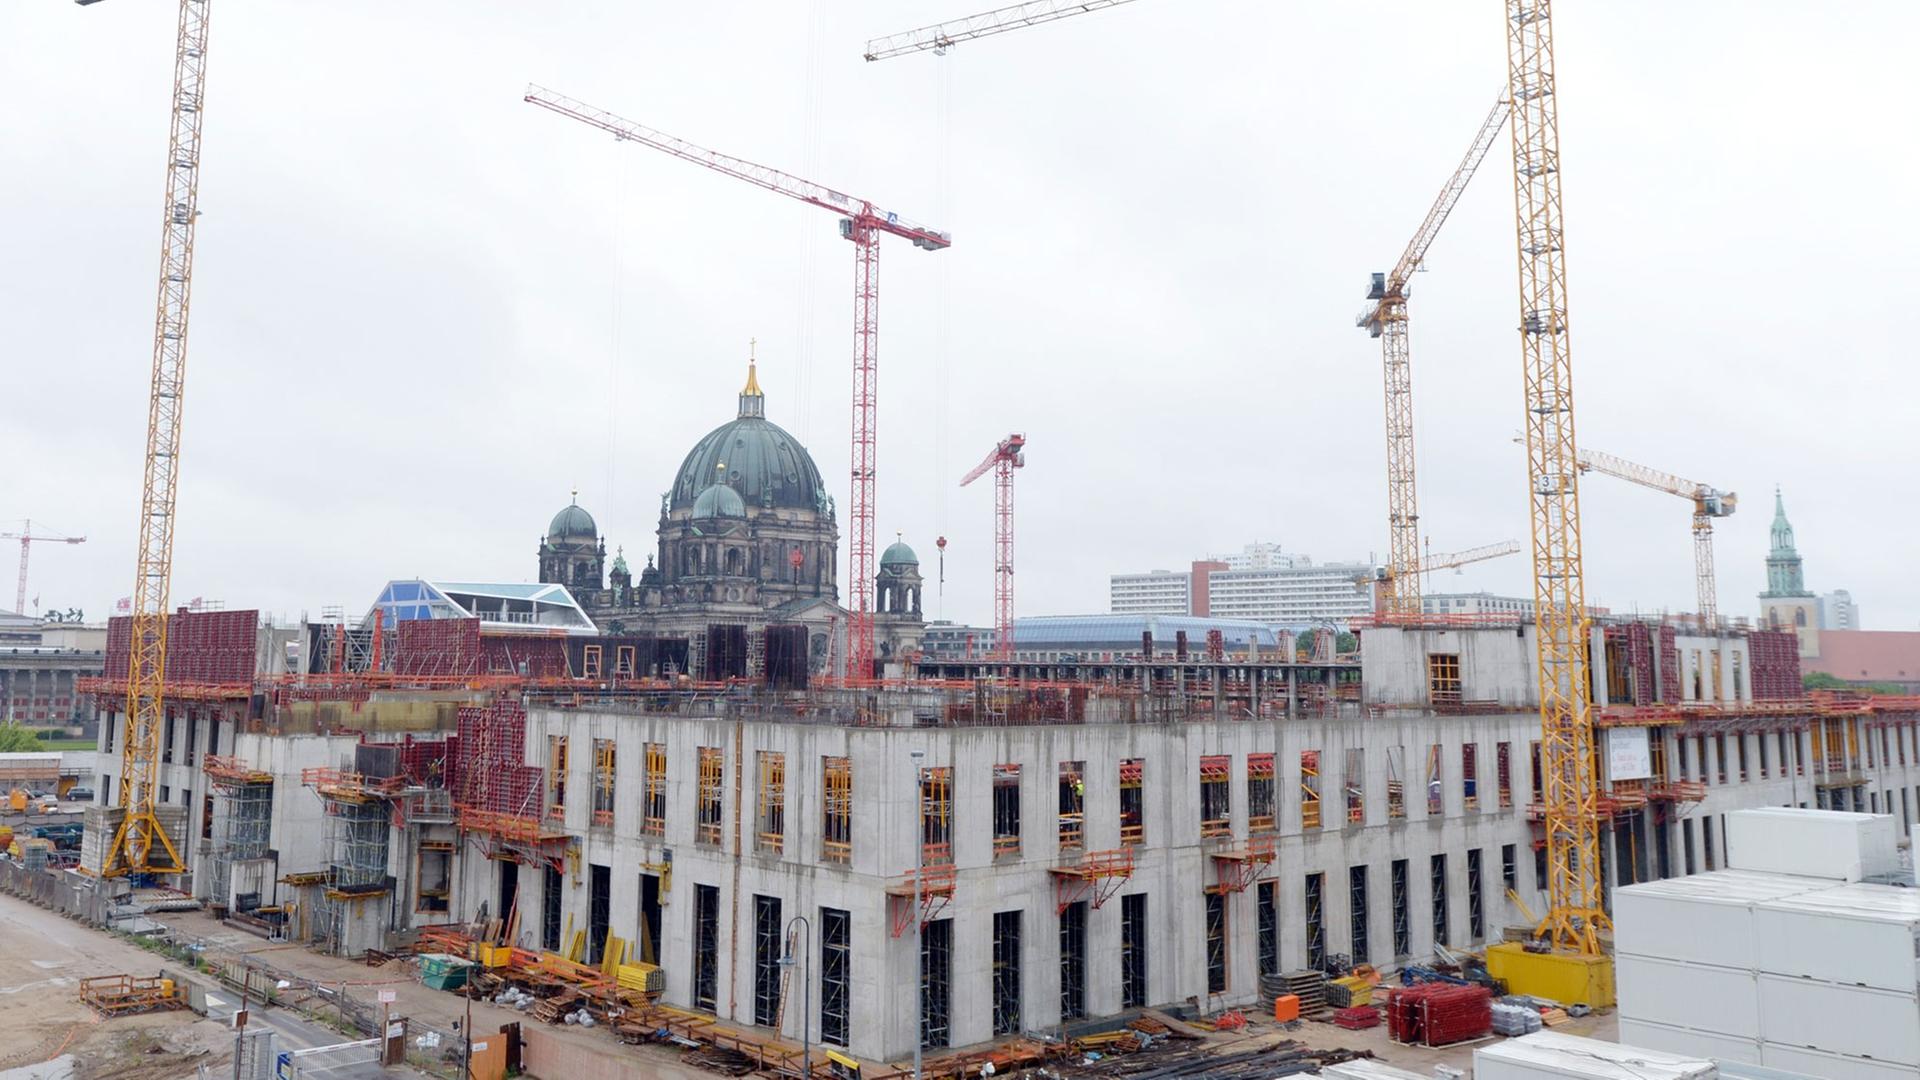 Kräne stehen auf der Baustelle des Berliner Schlosses - Humboldtforum in Berlin. Im Hintergrund ist der Berliner Dom zusehen.